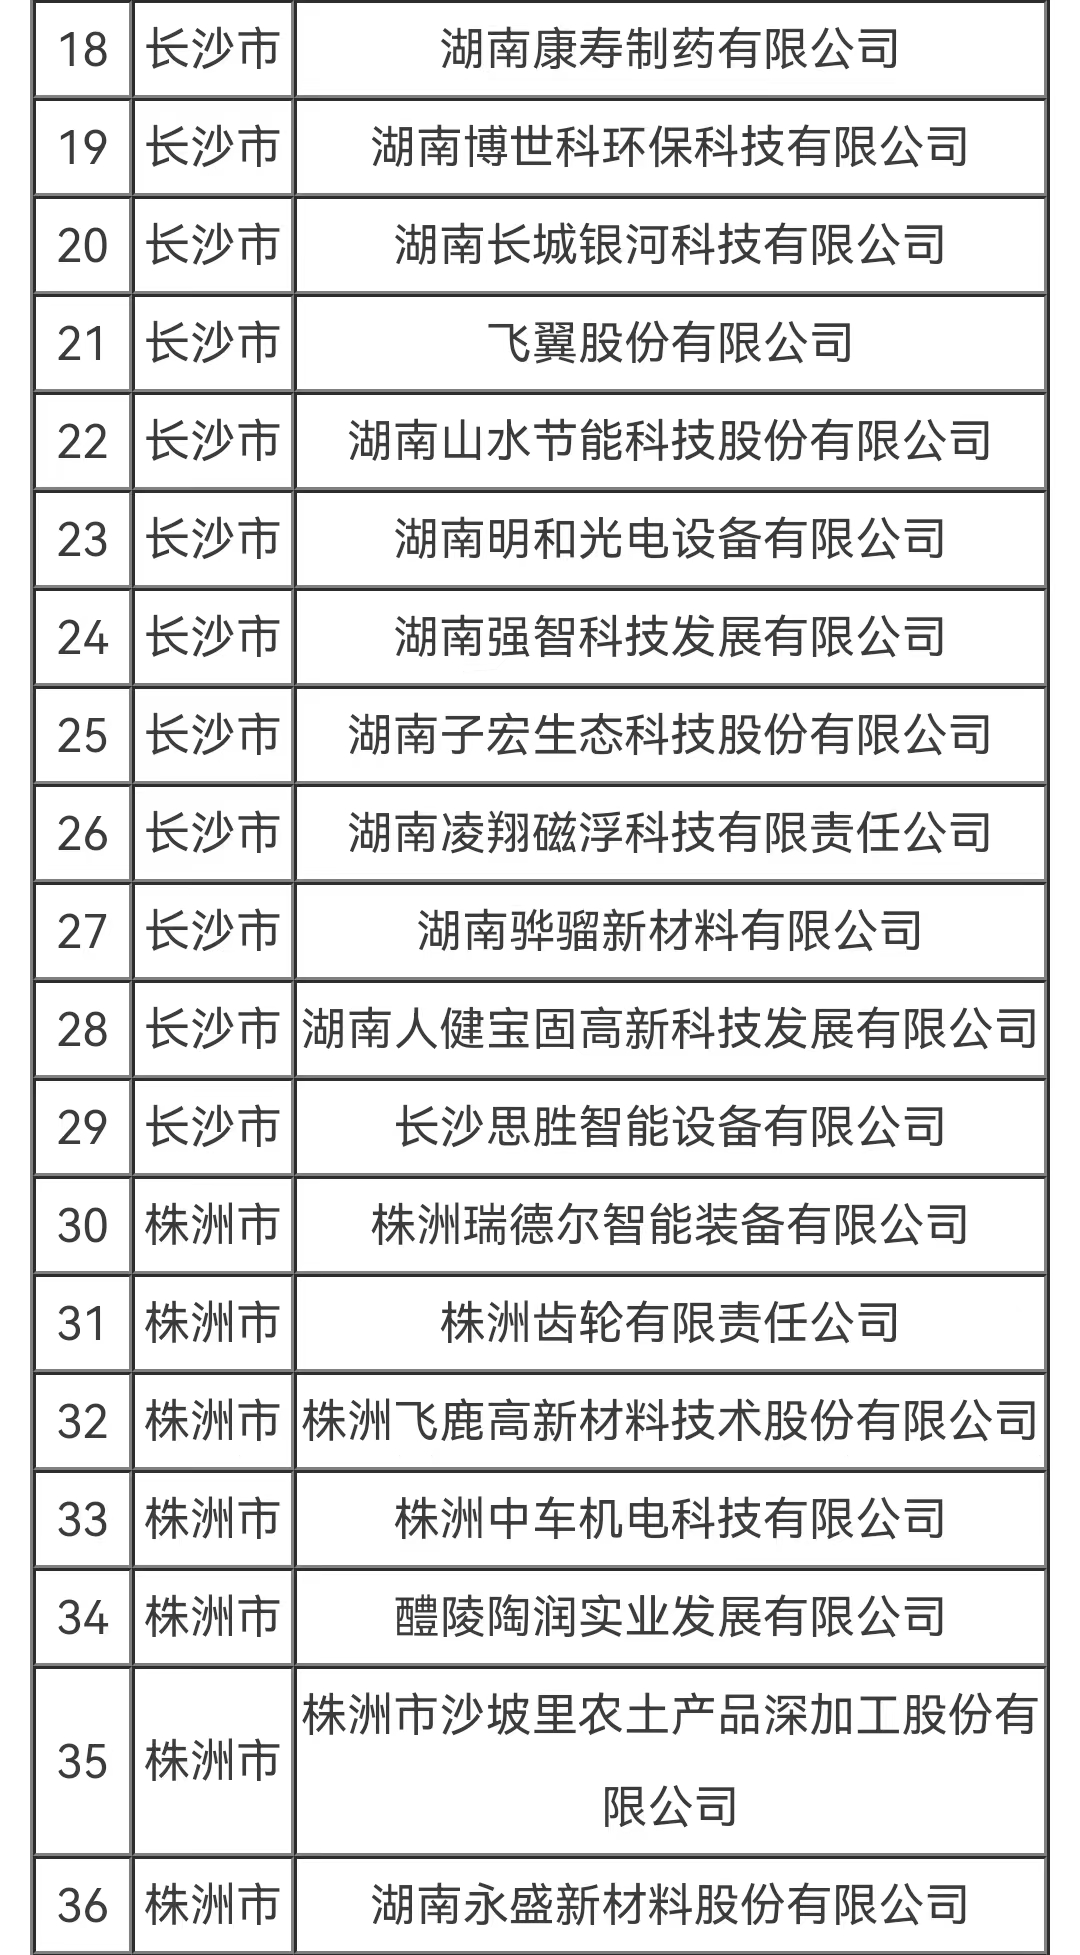 百家企业入选“湖湘精品”中小企业品牌能力提升行动2022年试点名单